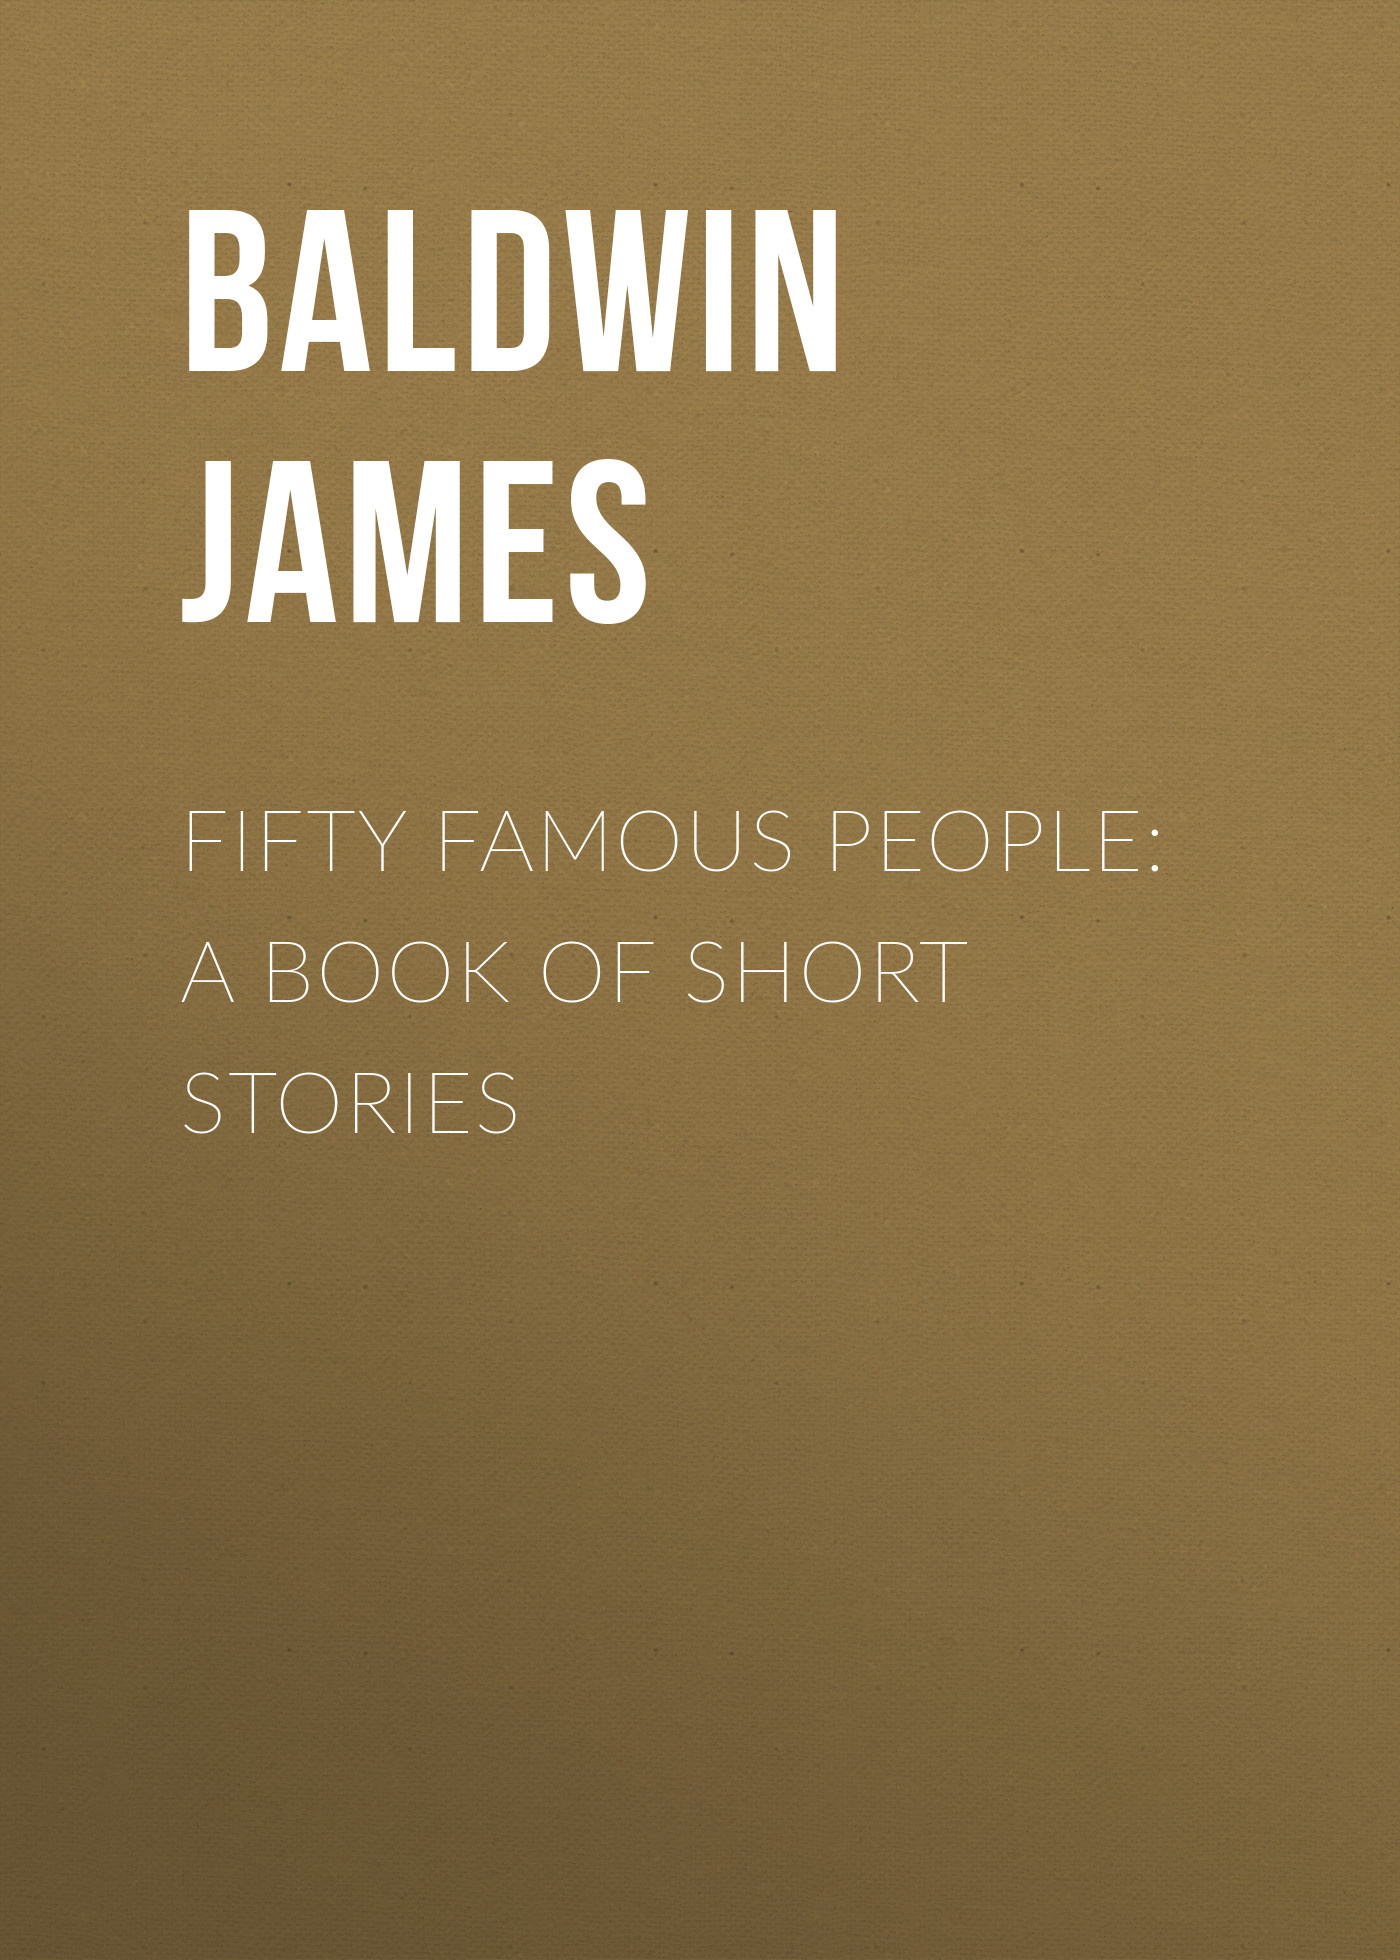 Книга Fifty Famous People: A Book of Short Stories из серии , созданная James Baldwin, может относится к жанру Зарубежные детские книги, Зарубежная старинная литература, Зарубежная классика. Стоимость электронной книги Fifty Famous People: A Book of Short Stories с идентификатором 34838718 составляет 0 руб.